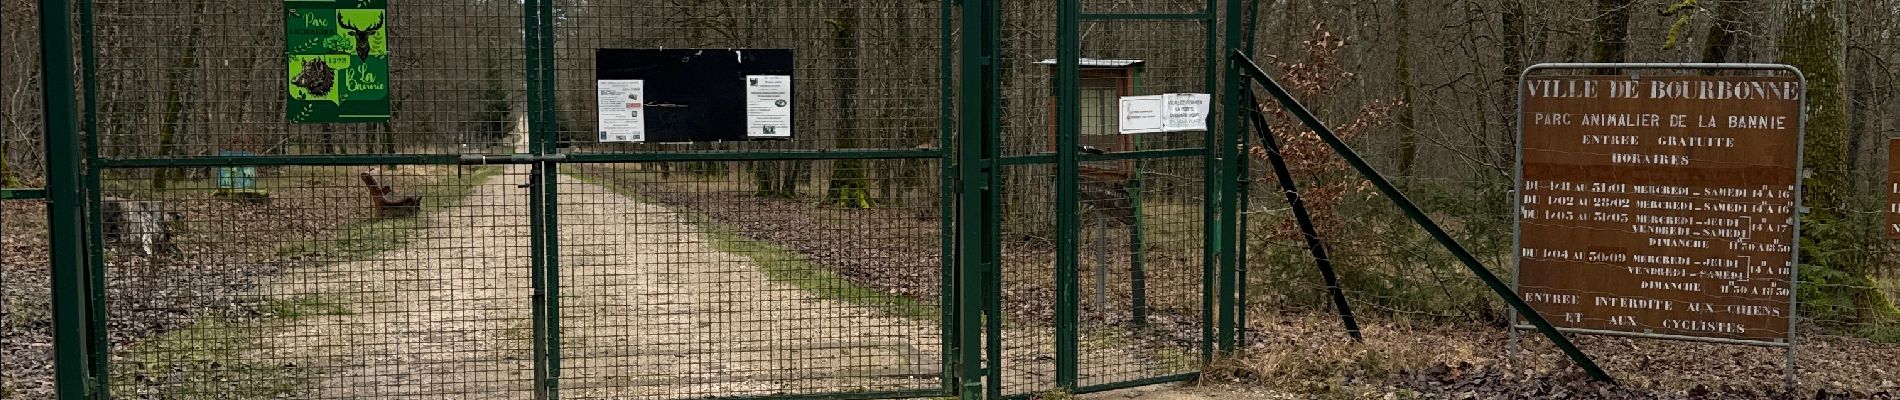 Randonnée  Coiffy-le-Haut - Trace pour parc animalier la bannie - Photo